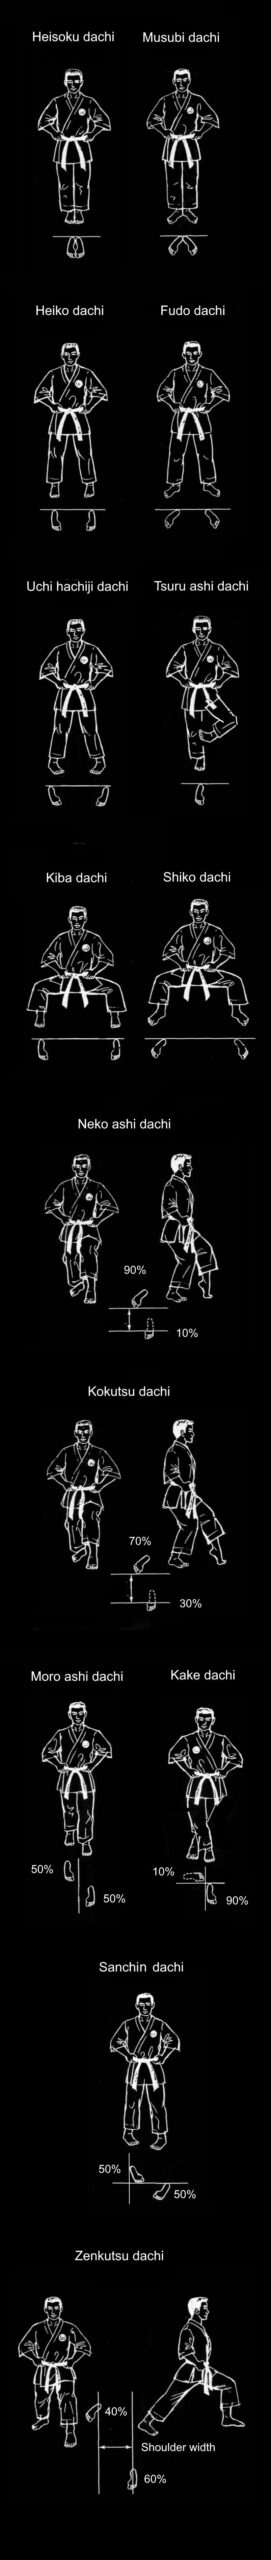 Kyokushin stances